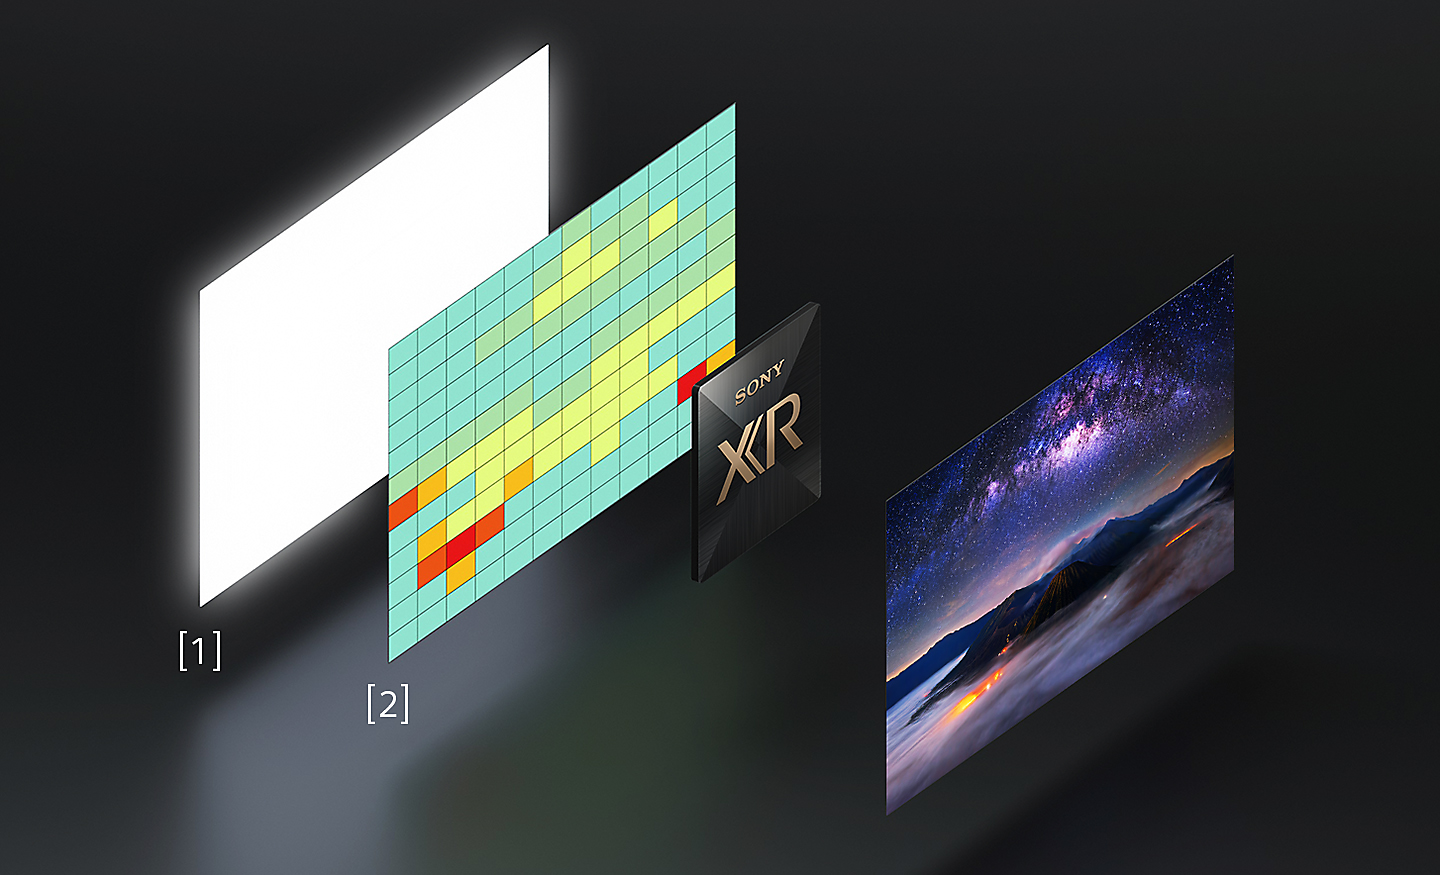 Illustration montrant deux images inclinées : à gauche, la dalle haute luminosité et le mappage de la distribution de la température ; à droite, une image inclinée d'un écran BRAVIA plein de couleurs